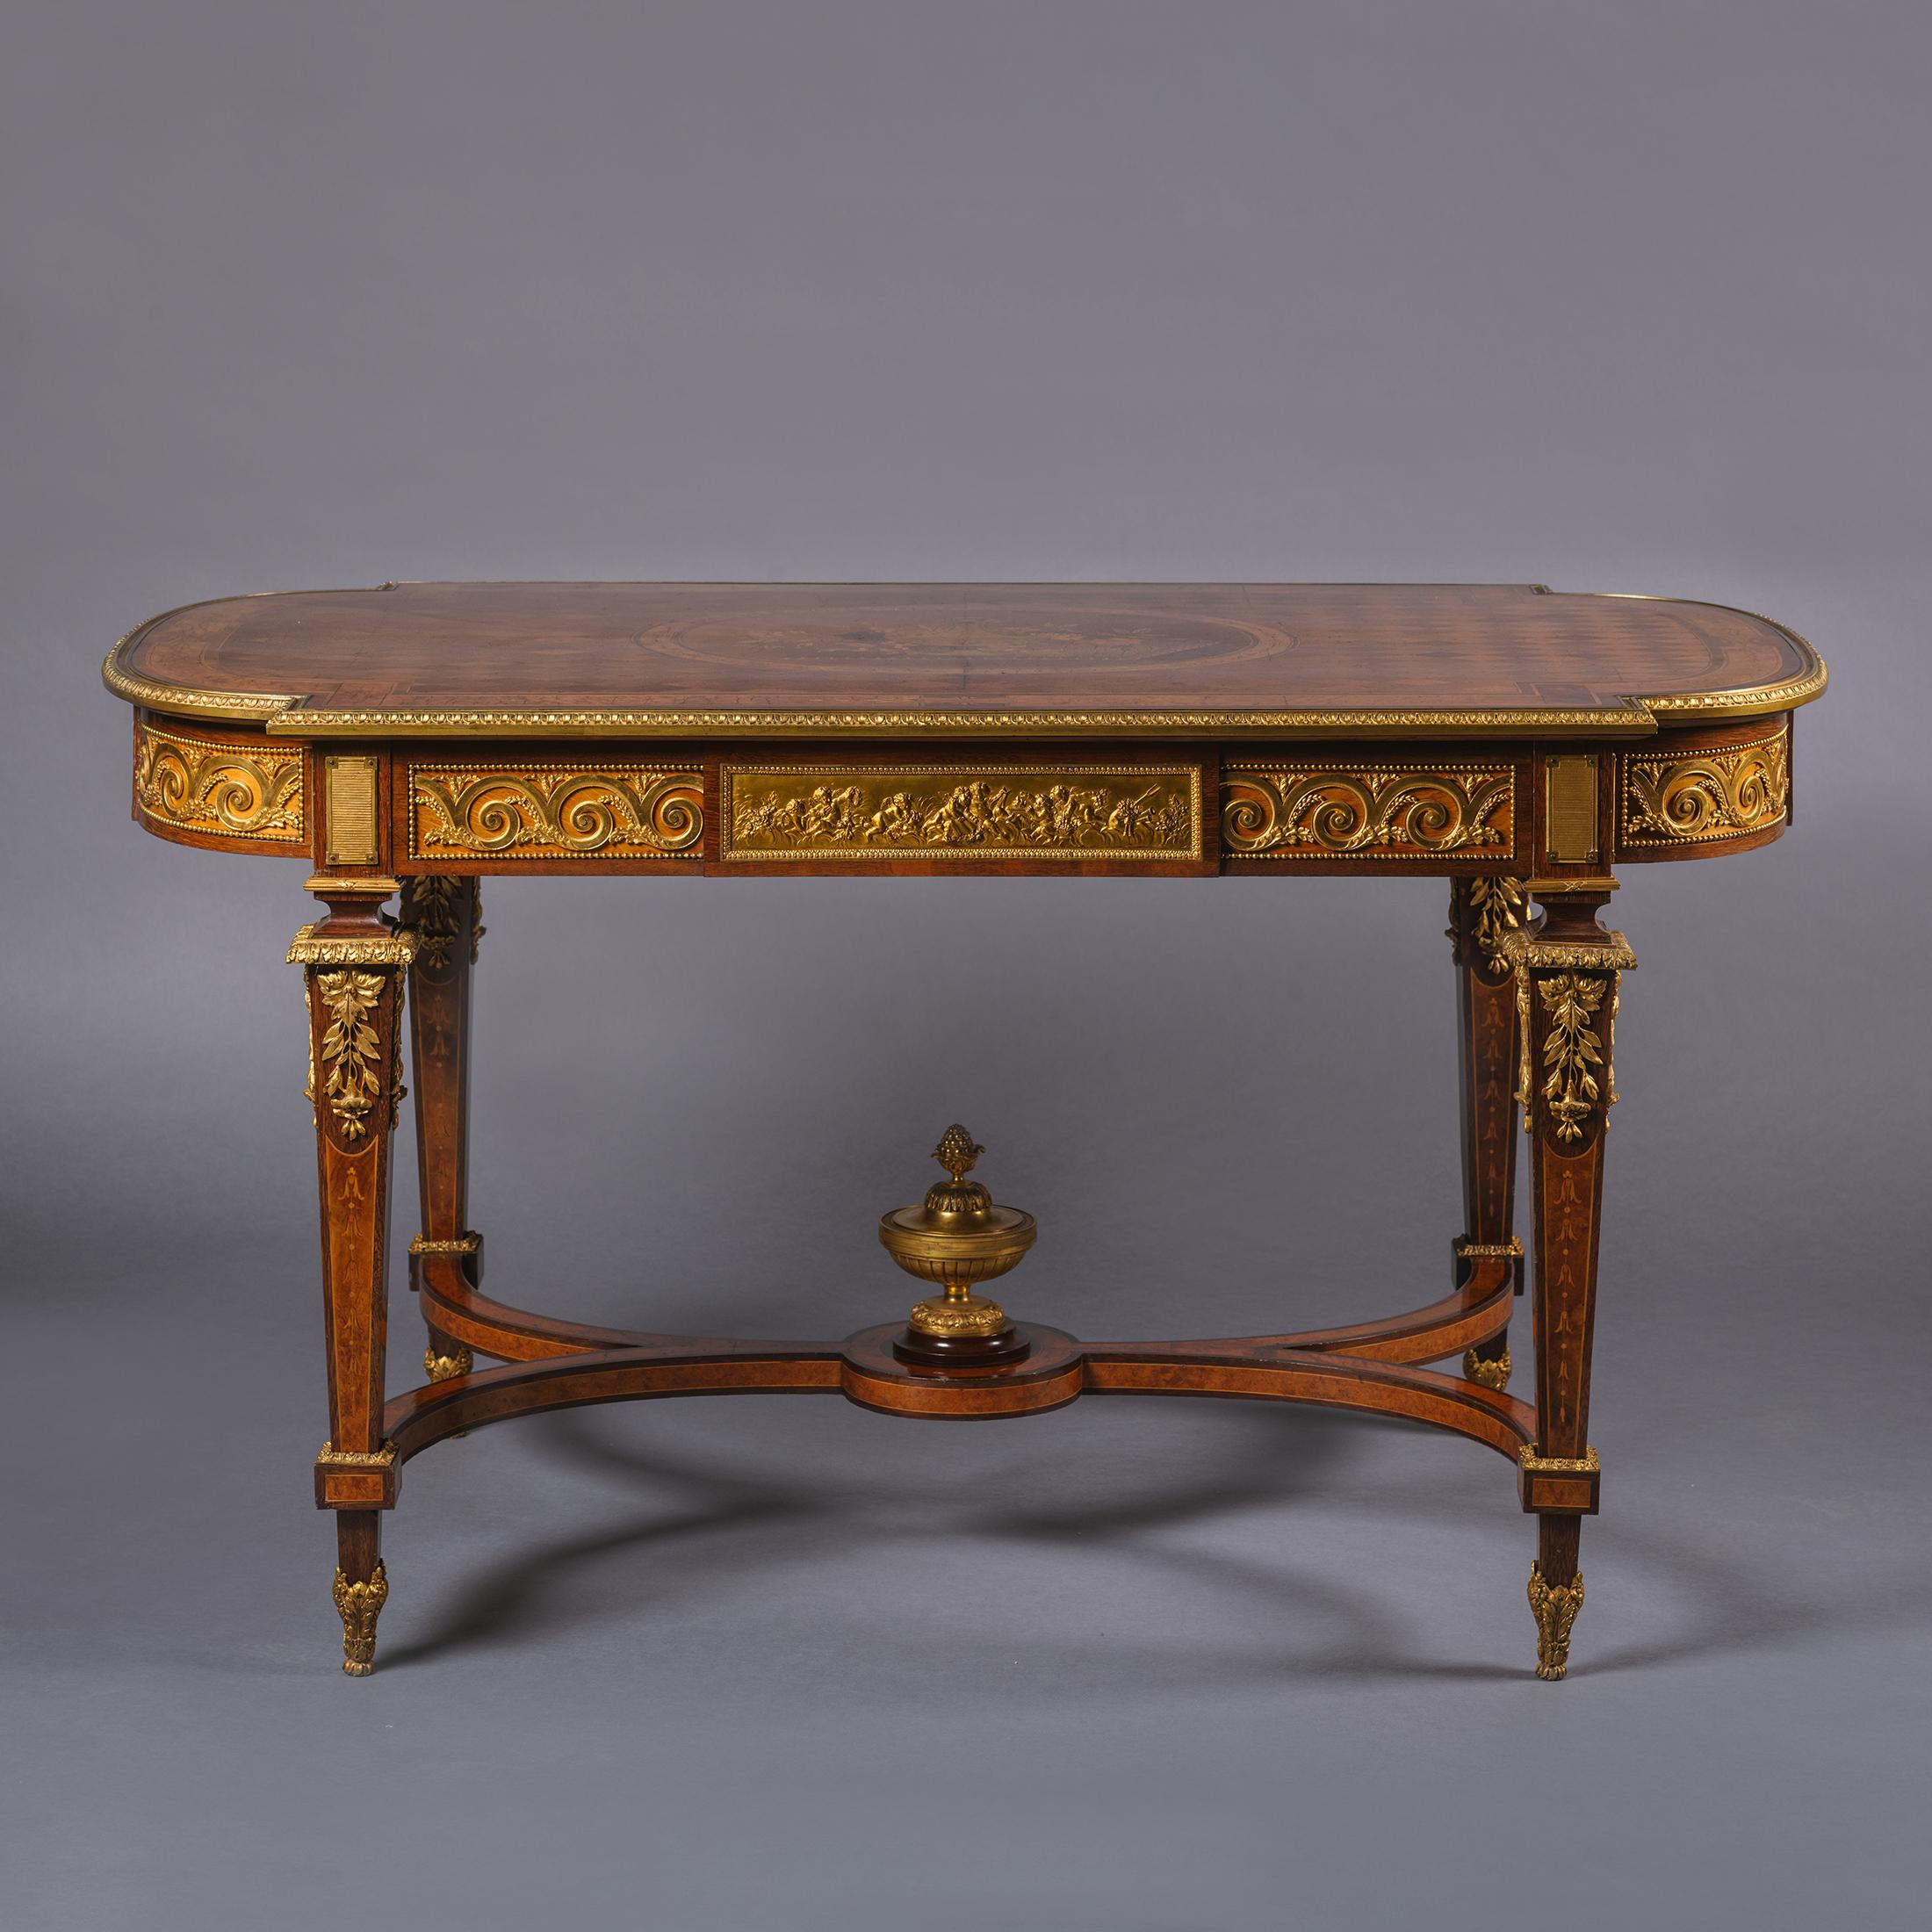 Mitteltisch im Stil Louis XVI aus vergoldeter Bronze und Intarsien.

Dieser beeindruckende Mitteltisch ist wunderschön mit Beschlägen aus Cuivre doré verziert. Das Oberteil hat einen rautenförmigen Parkettgrund, der eine ovale Platte mit einem